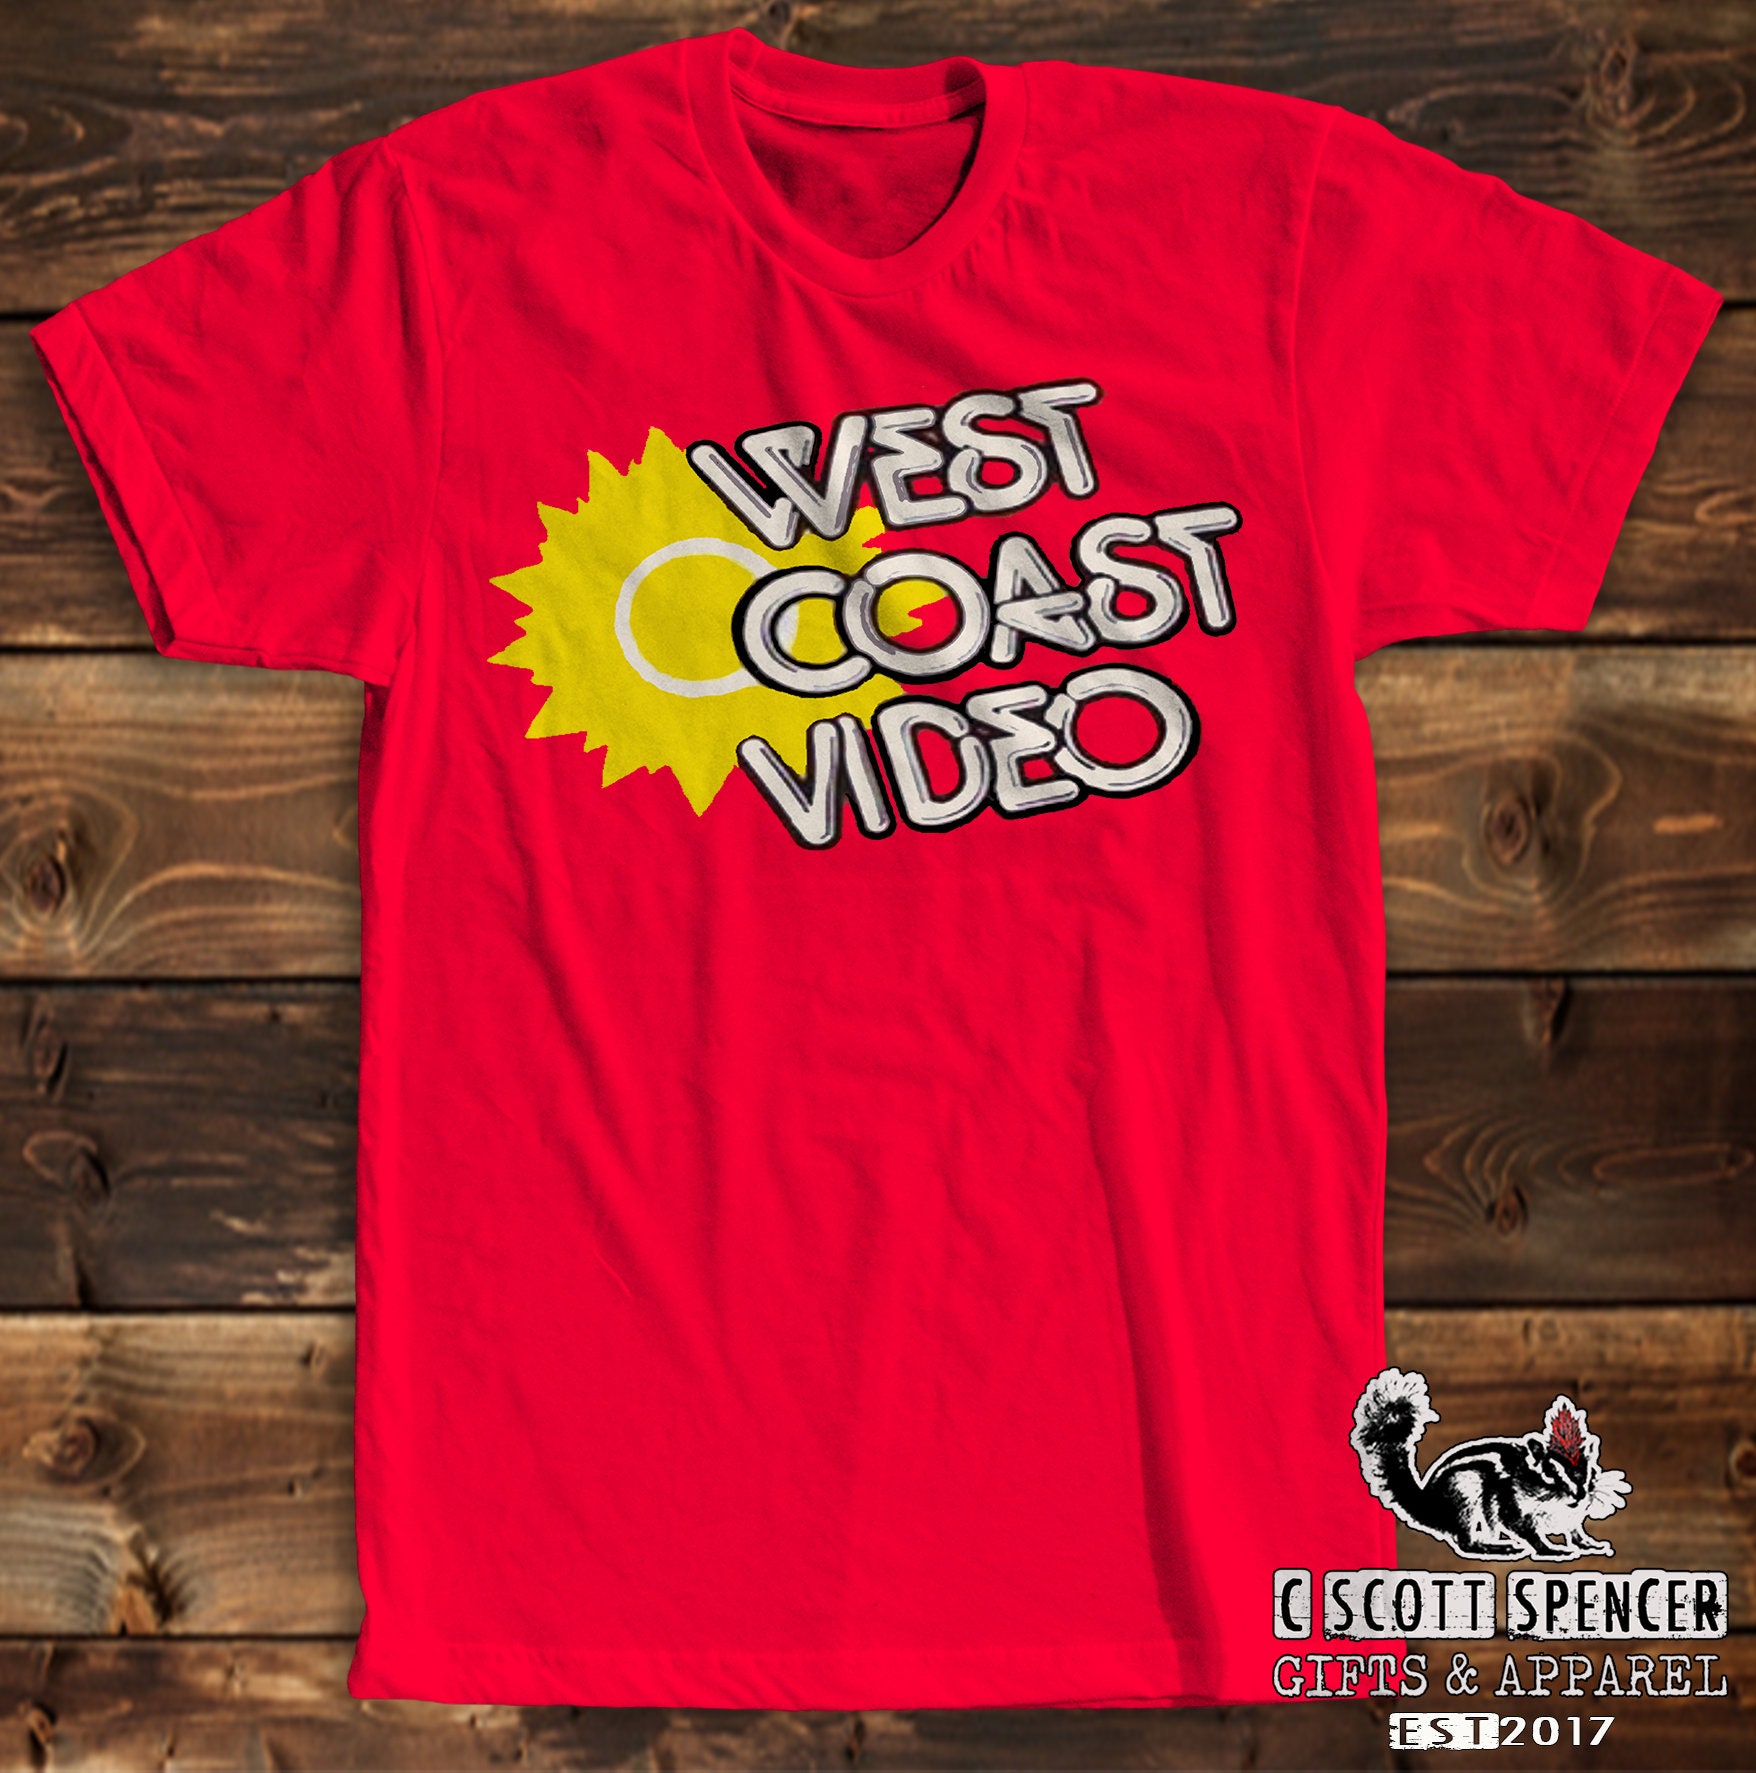 West Coast Video Memorabilia T-shirt red or Black C Scott Etsy